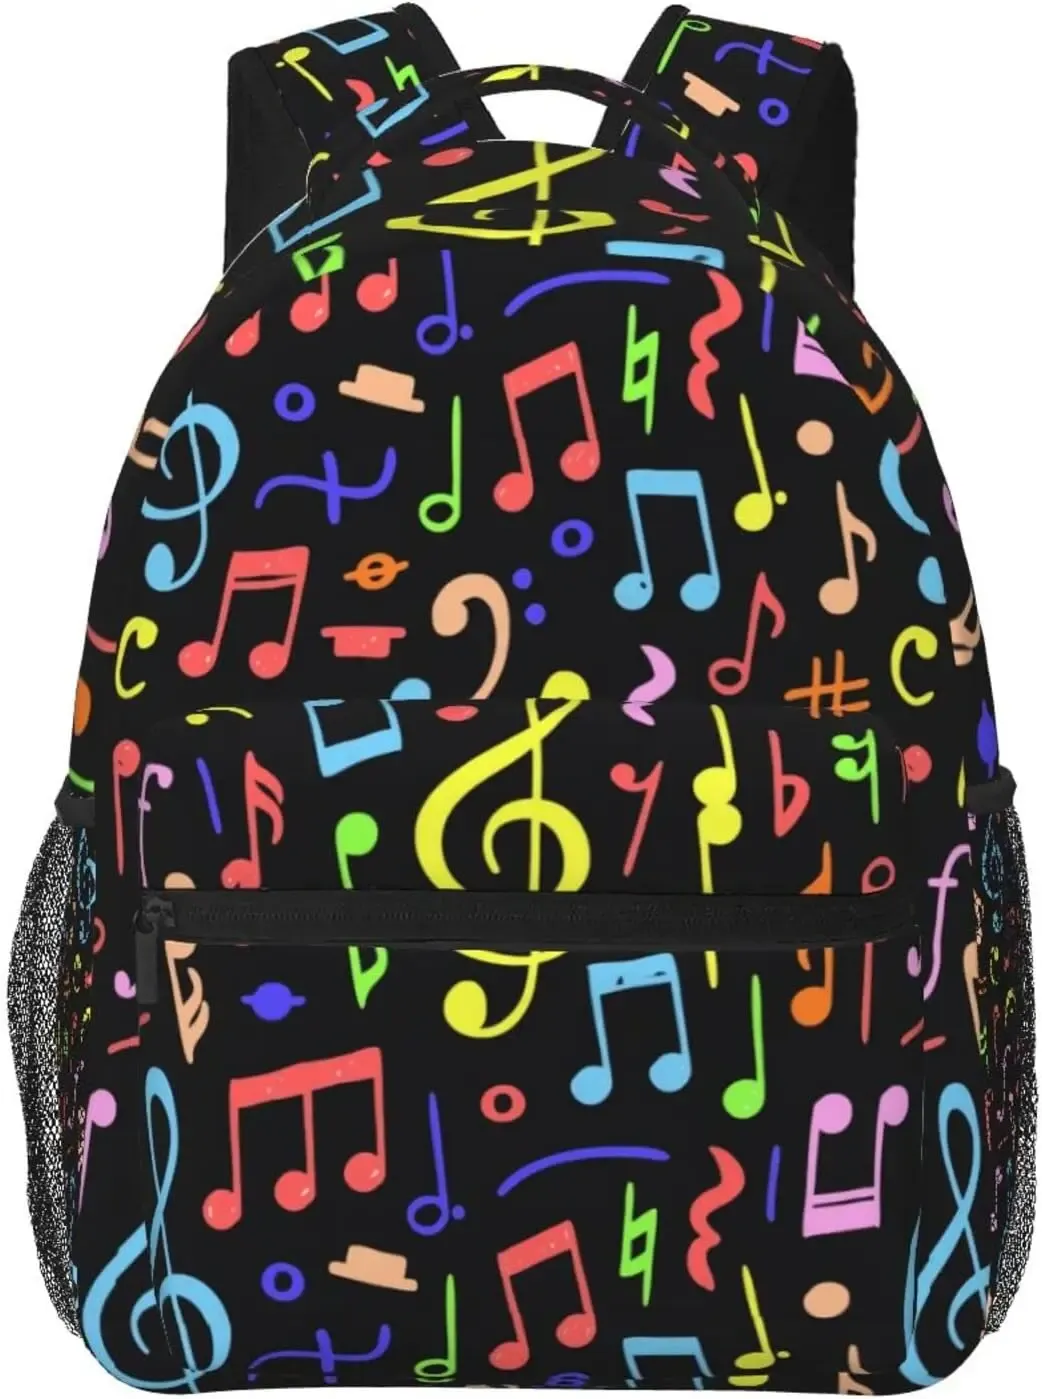 Sırt çantası müzik notu piyano tuşları sırt çantaları sevimli dizüstü bilgisayar kitap çantası bilgisayar çantası yürüyüş seyahat gün çantası kadınlar için